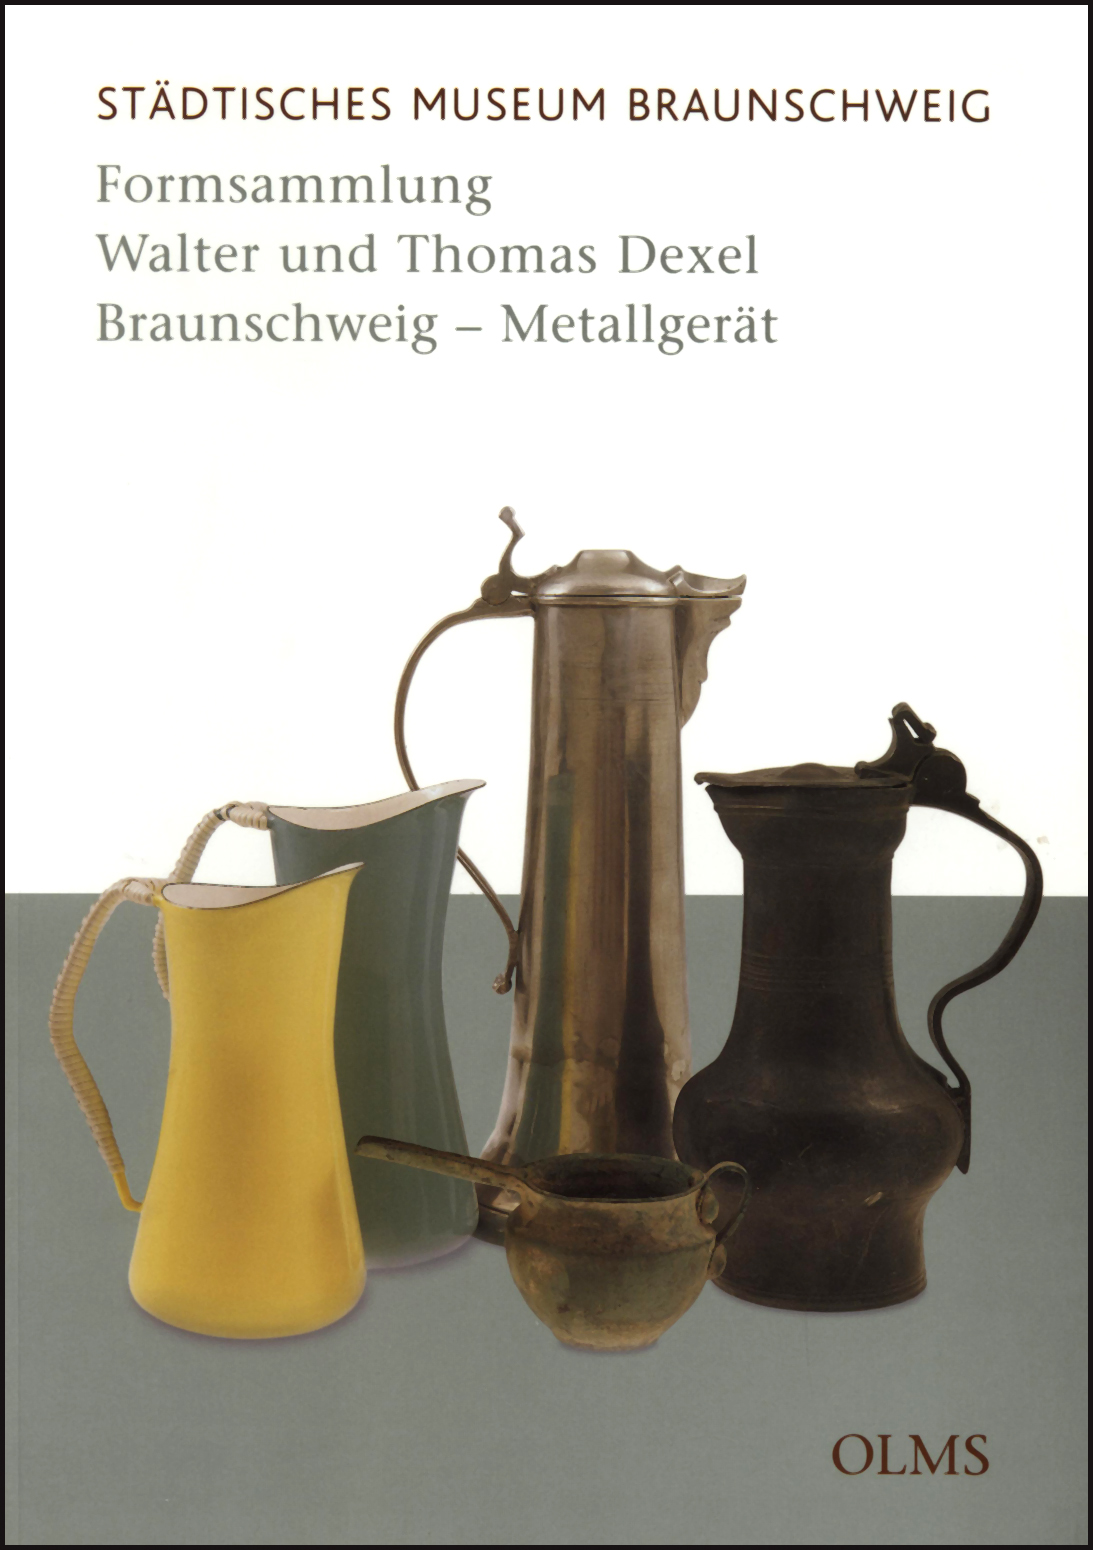 Formsammlung Walter und Thomas Dexel, Braunschweig - Metallgerät